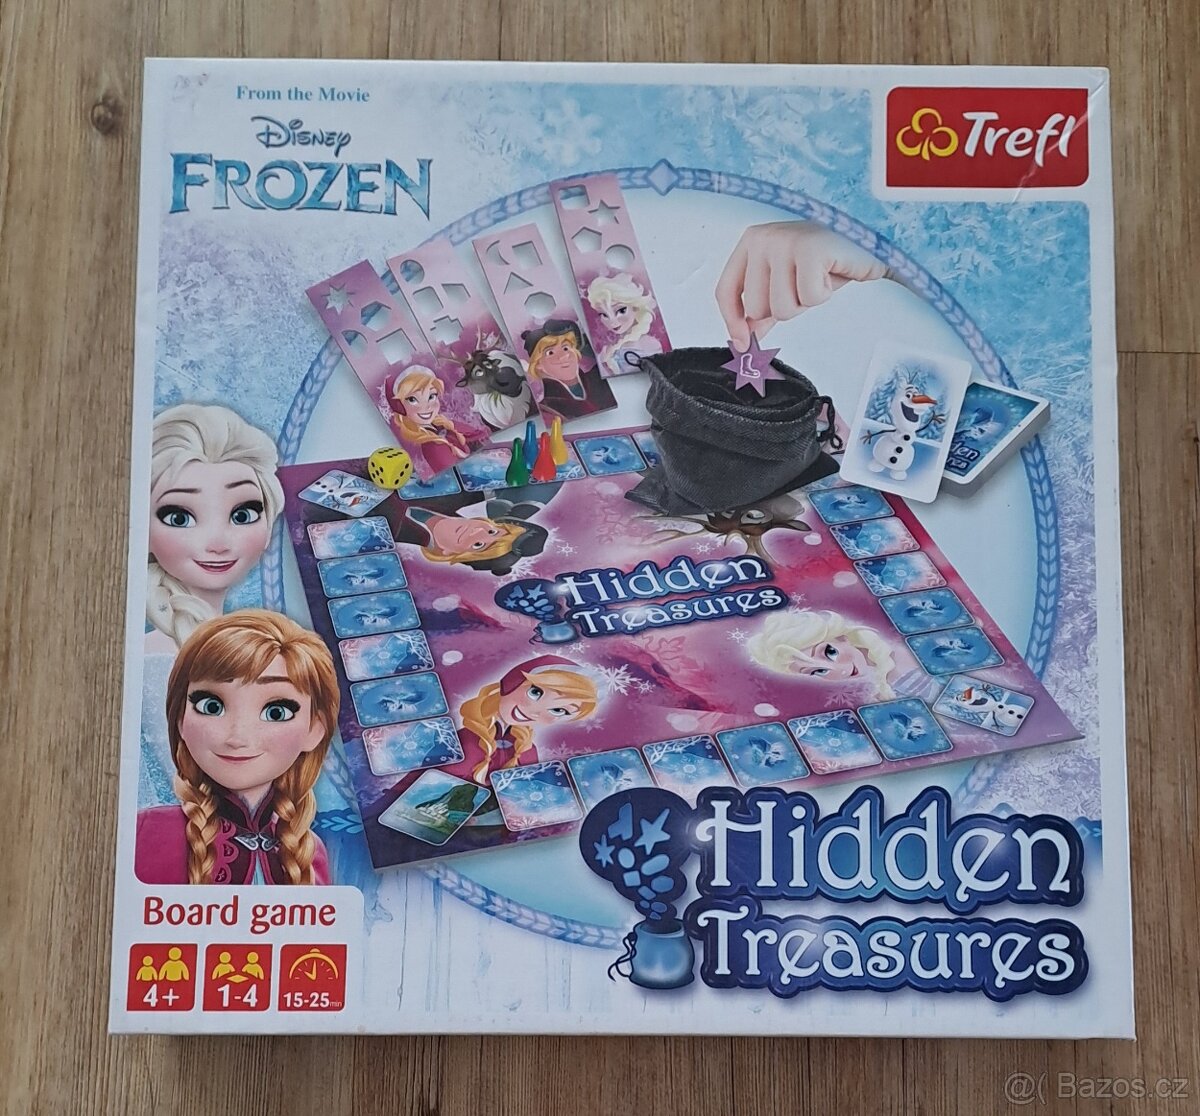 Frozen Ledové království - Hidden Treasures